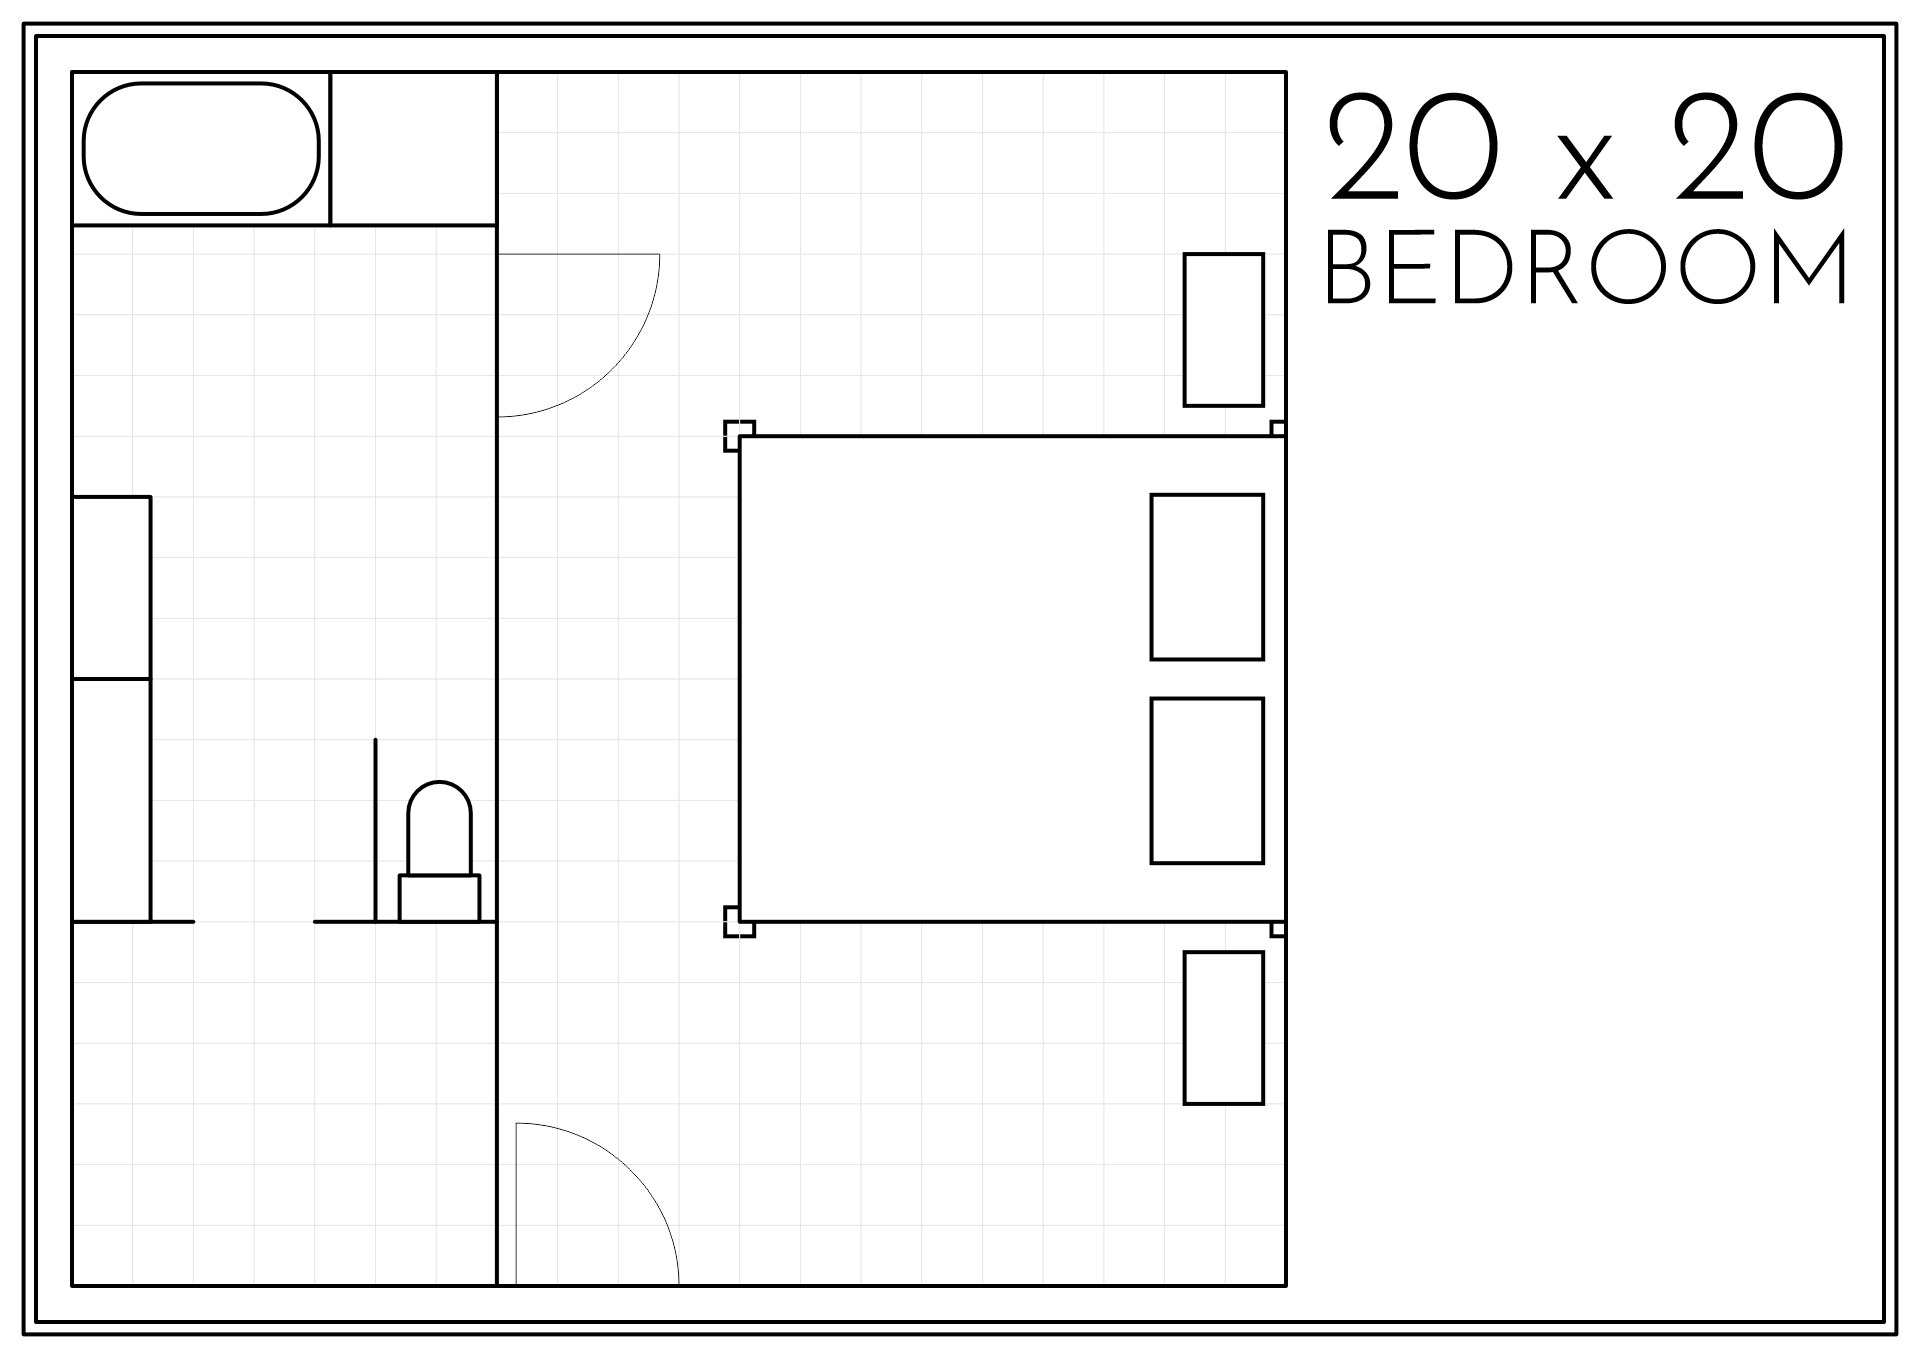 Master Bedroom Floor Plans 20 X 20